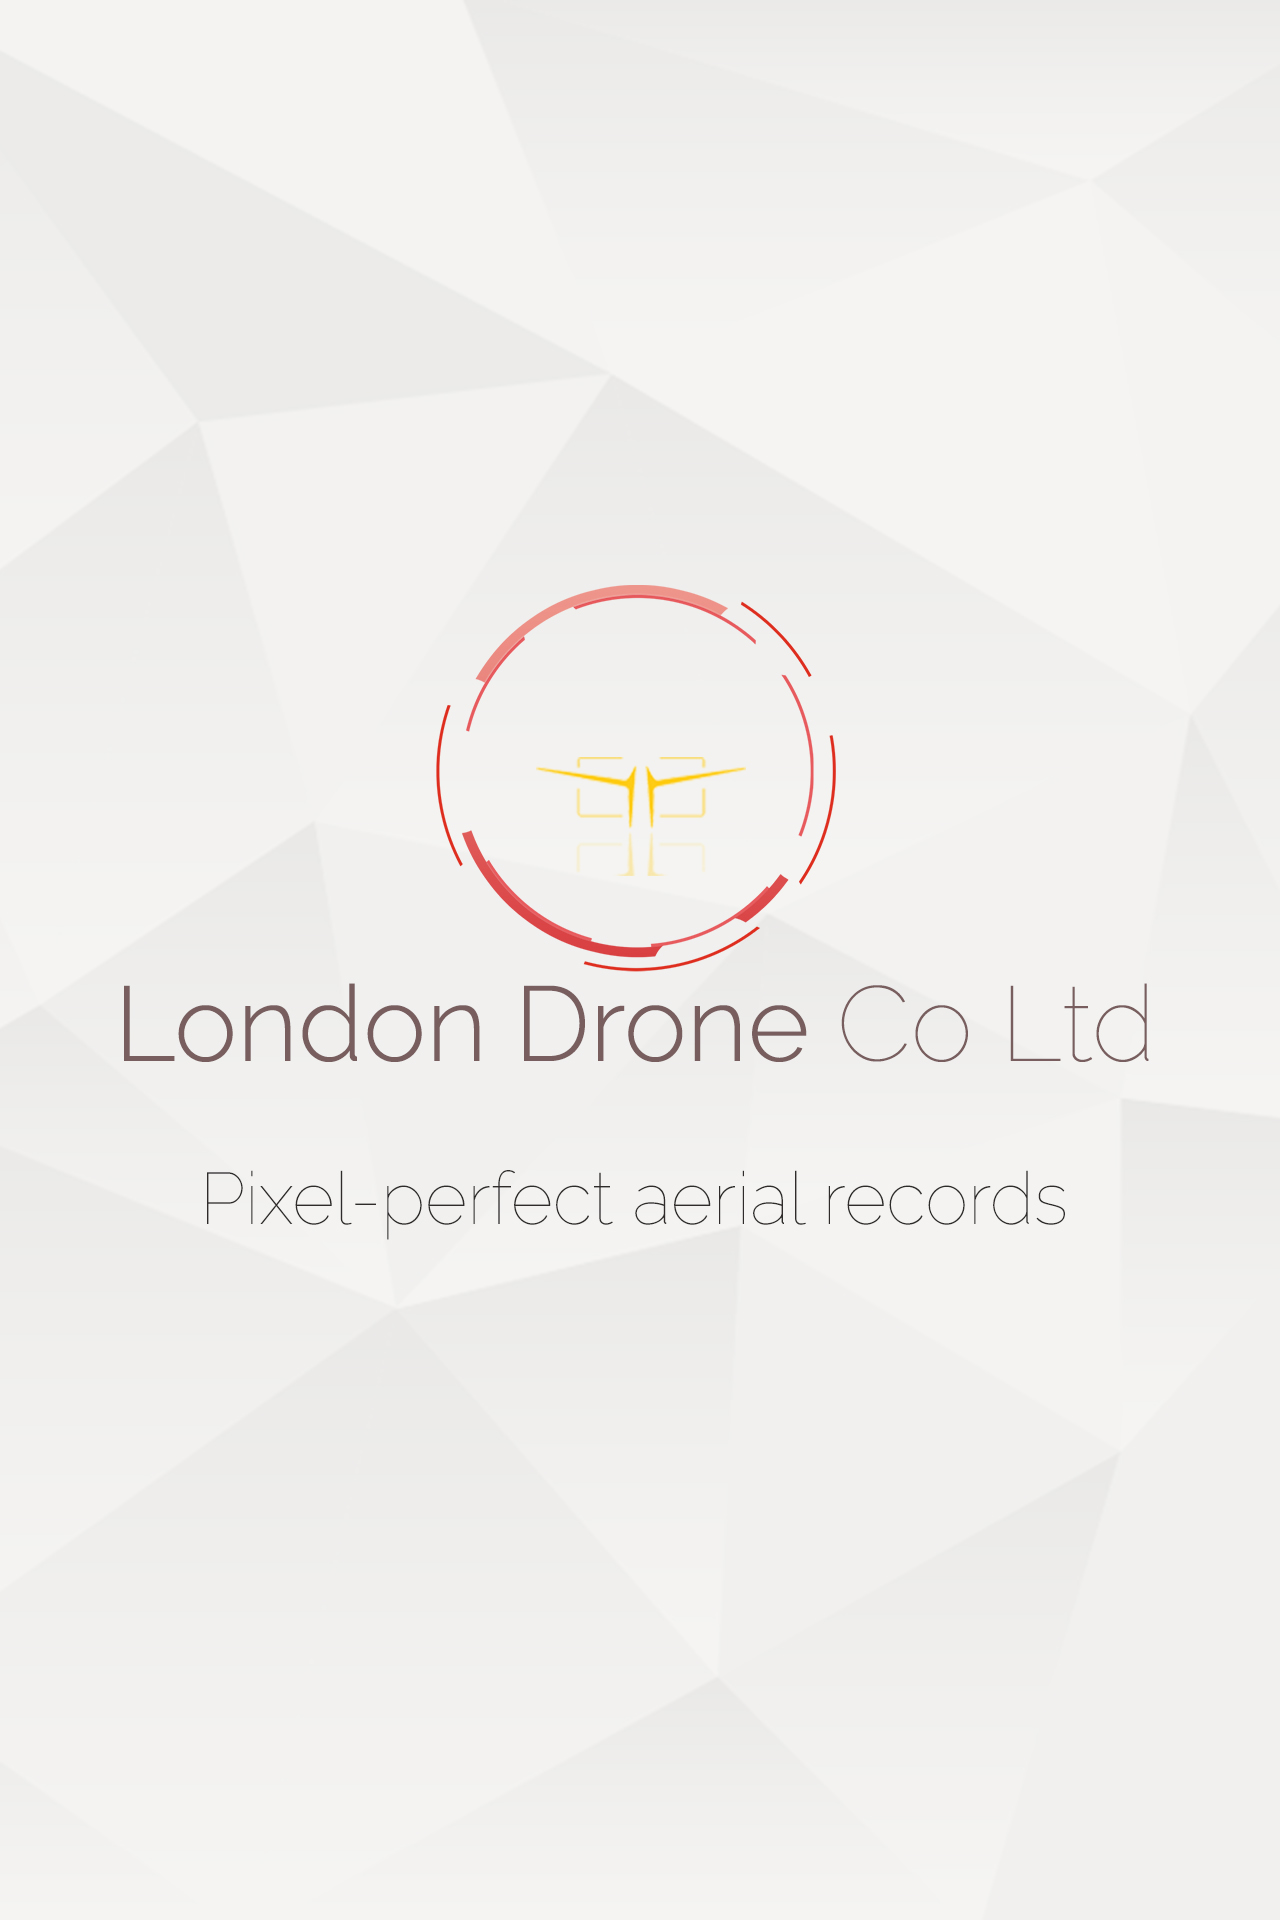 London Drone Co Ltd